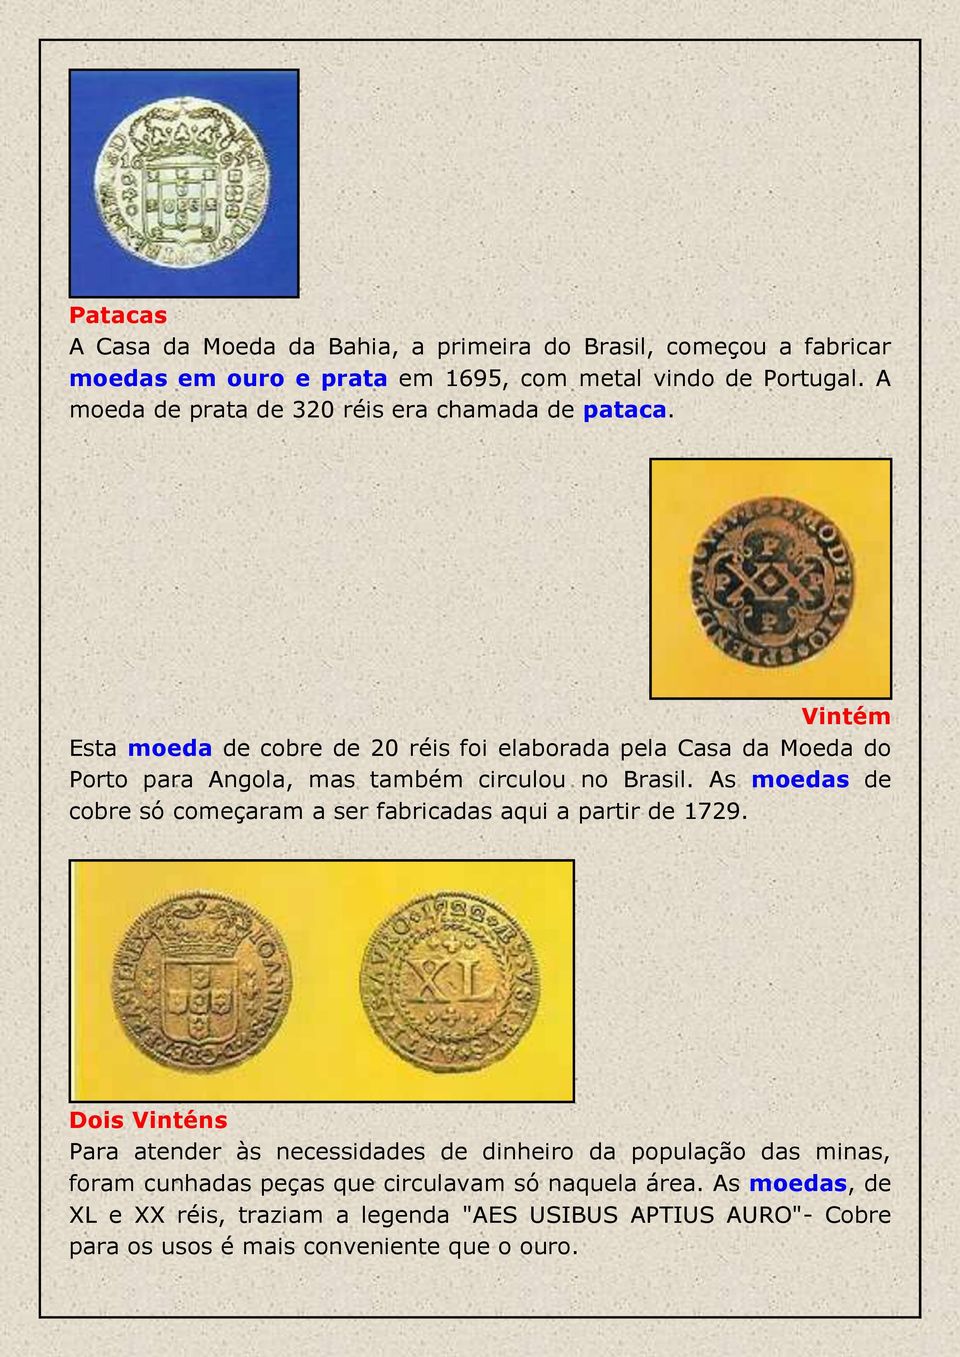 Vintém Esta moeda de cobre de 20 réis foi elaborada pela Casa da Moeda do Porto para Angola, mas também circulou no Brasil.